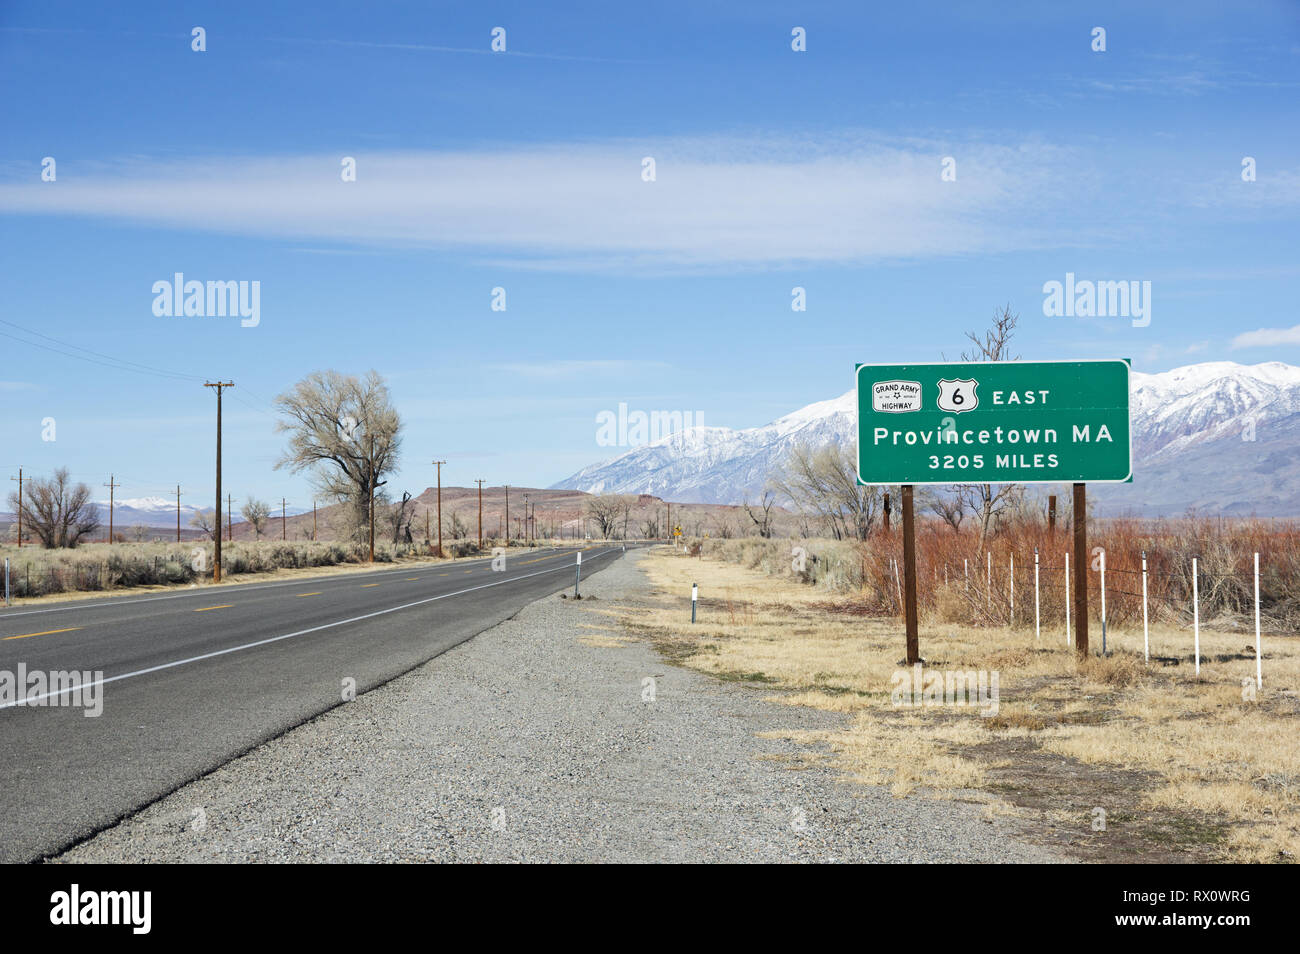 Extrémité ouest de l'US Highway 6 à Bishop en Californie avec panneau disant Provincetown MA 3205 miles Banque D'Images